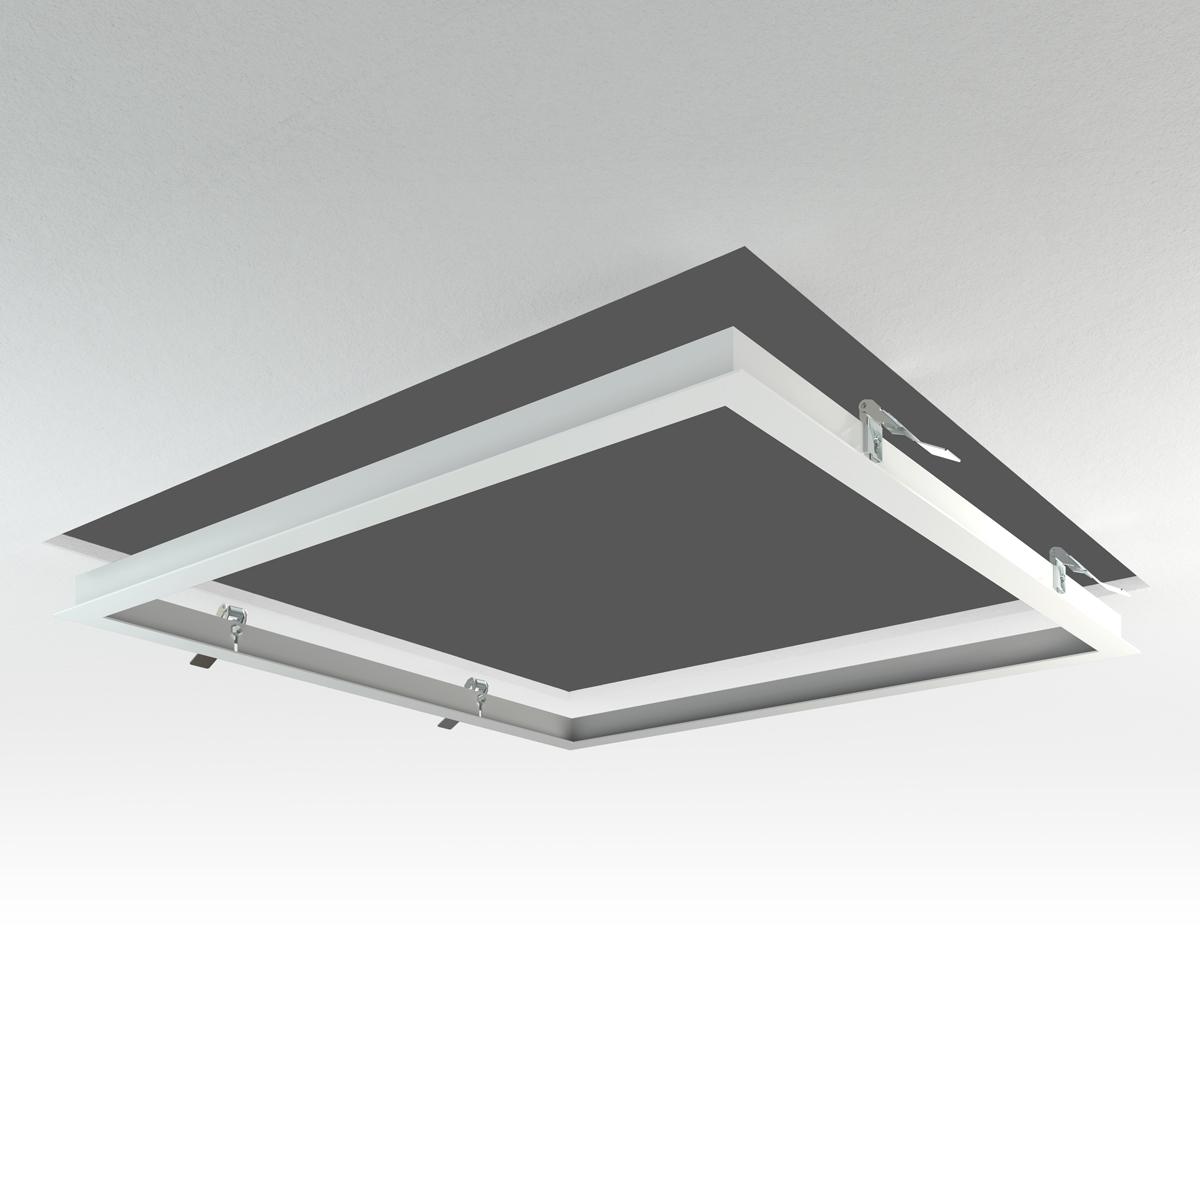 LED Panel Einbaurahmen 62x62cm weiß Deckeneinbau Montagerahmen für Rigipskartondecke